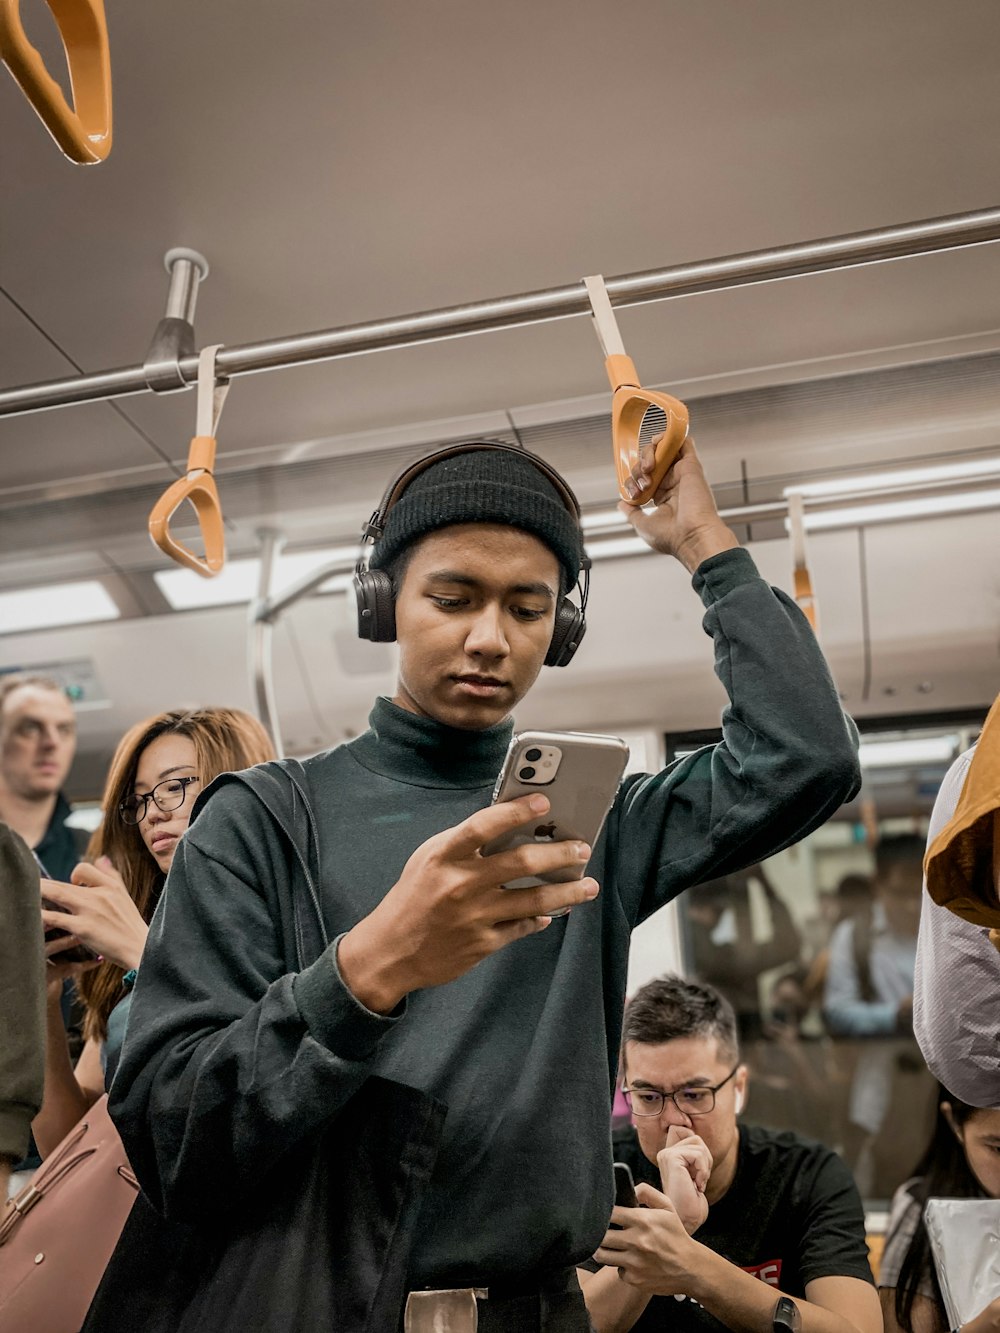 Mann im Zug hält Smartphone in der Hand